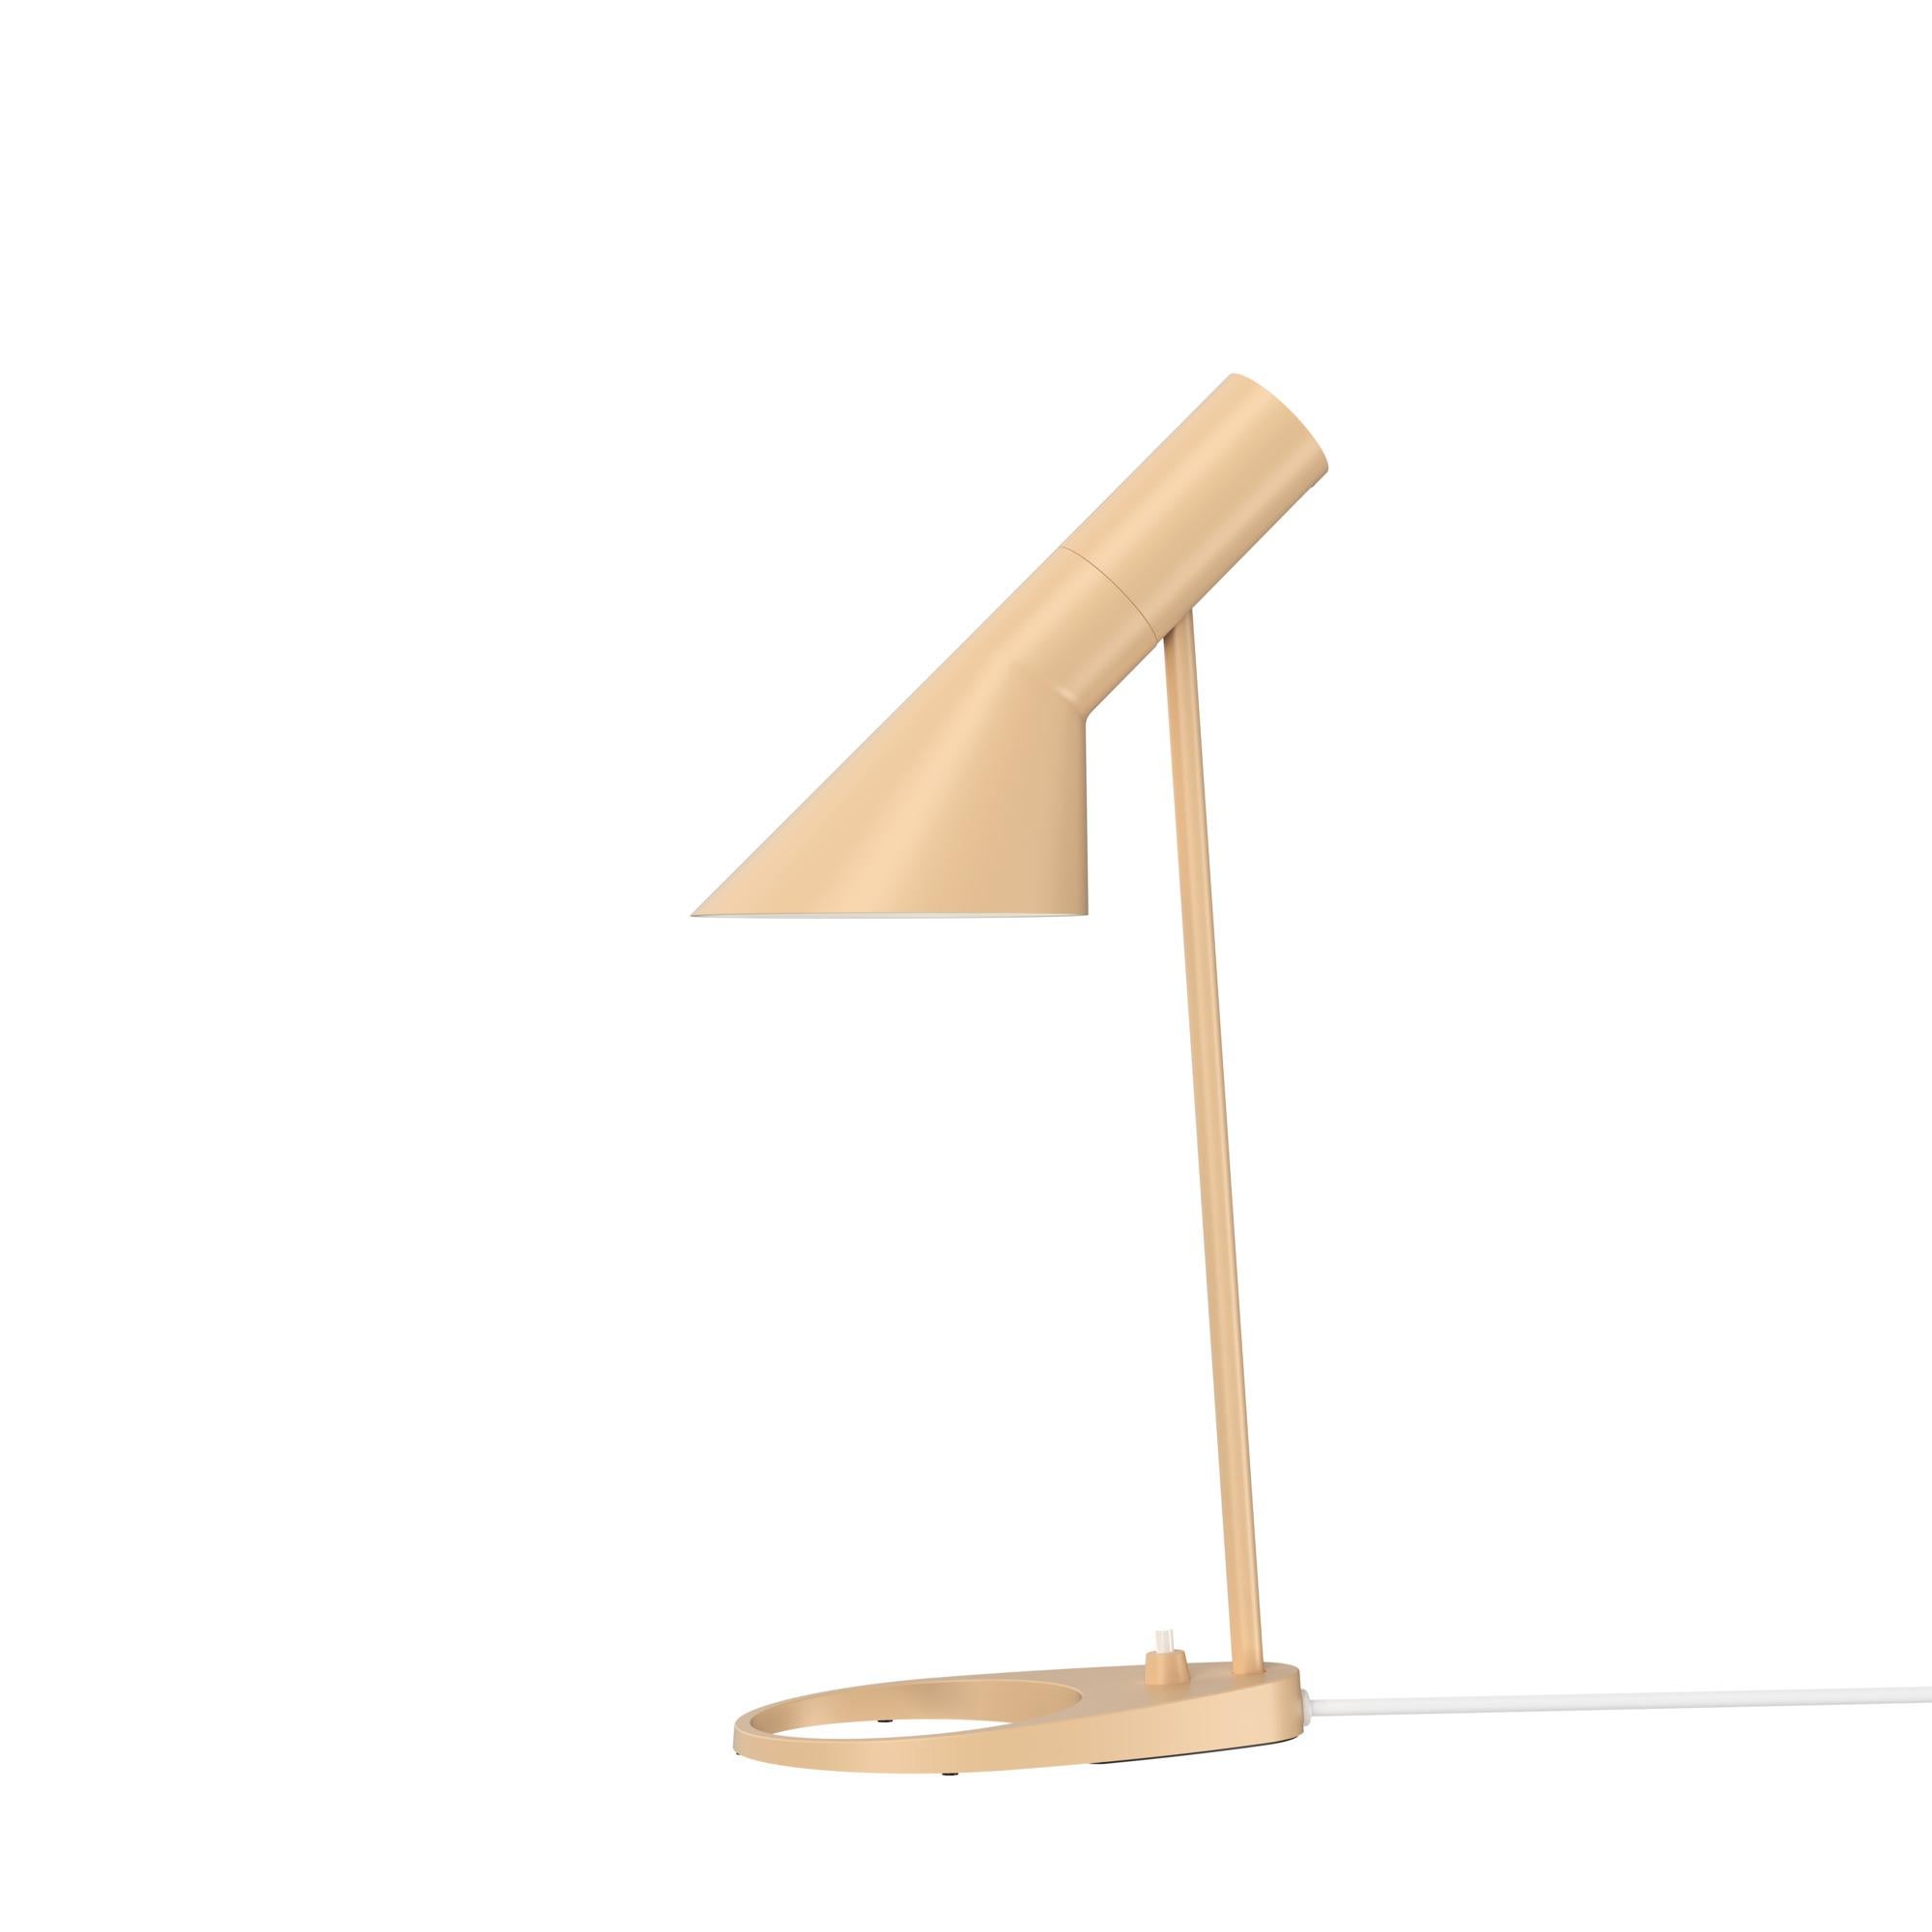 Arne Jacobsen 'AJ Mini' Table Lamp in Soft Lemon for Louis Poulsen For Sale 12